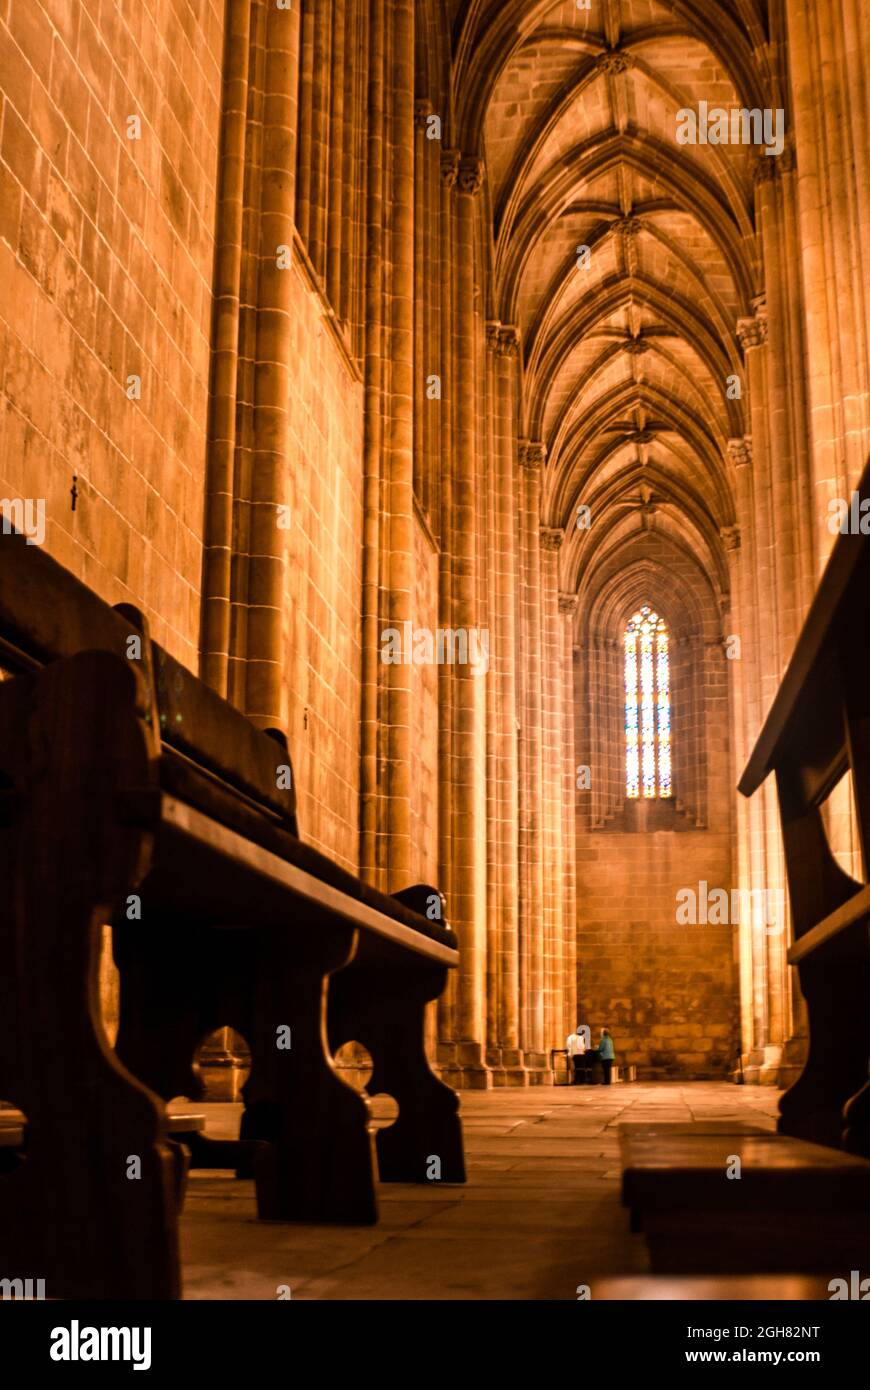 Im Inneren des Klosters von Batalha, alte Kirchenbänke und geschnitzte Decke des Heiligtums - Batalha, Portugal, Vertikal, selektiver Fokus Stockfoto